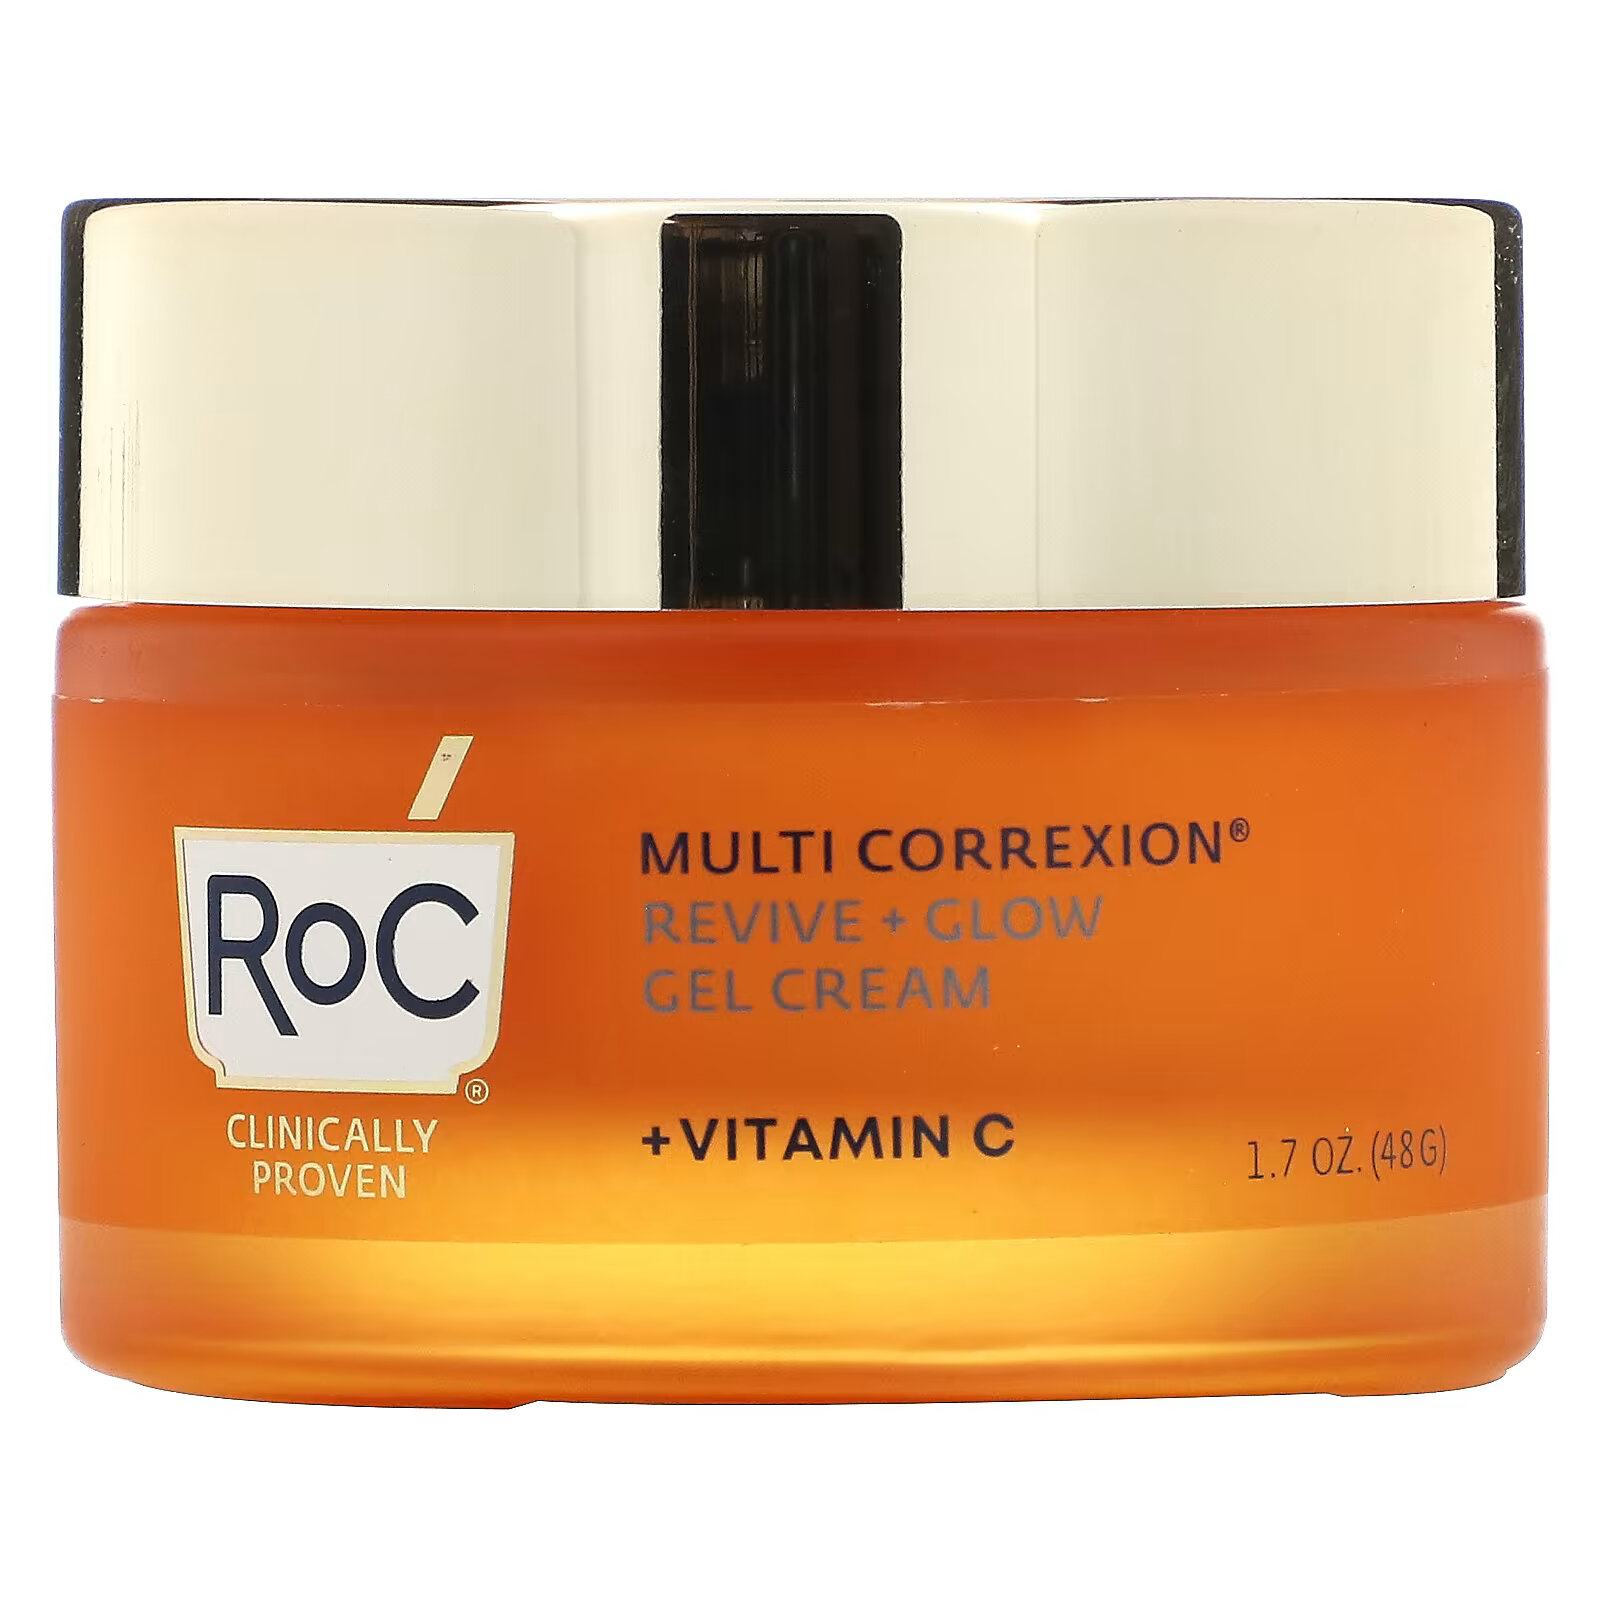 RoC, Multi Correxion, гель-крем для восстановления и сияния с витамином C, 48 г (1,7 унции) roc multi correxion гель крем для восстановления и сияния с витамином c 48 г 1 7 унции